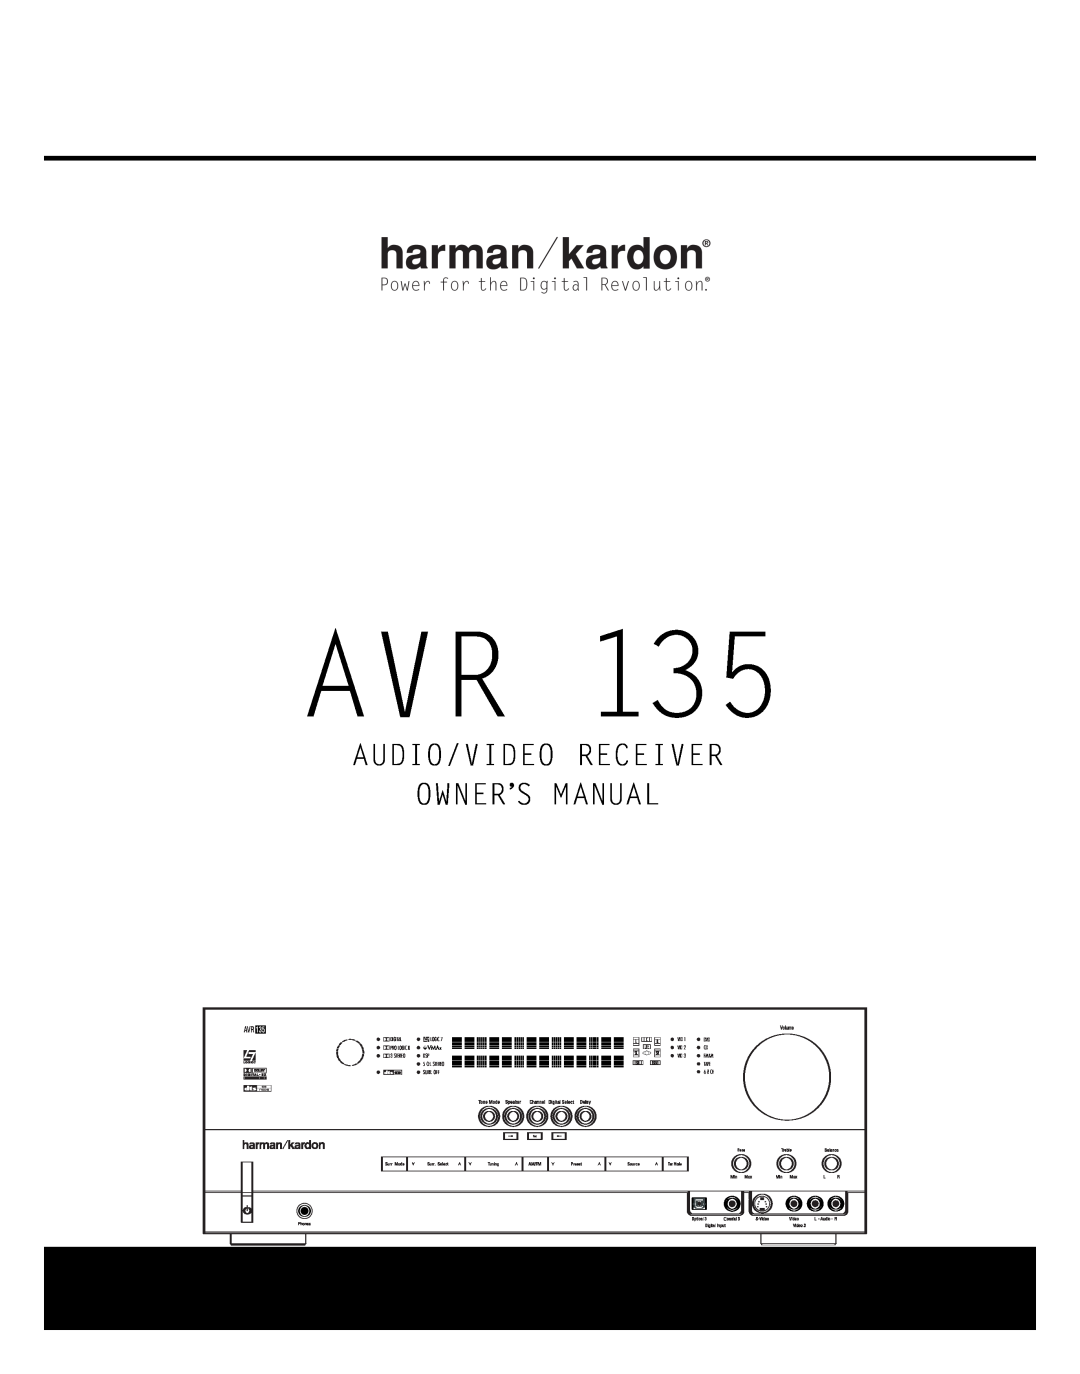 Harman-Kardon AVR 135 owner manual Power for the Digital Revolution 